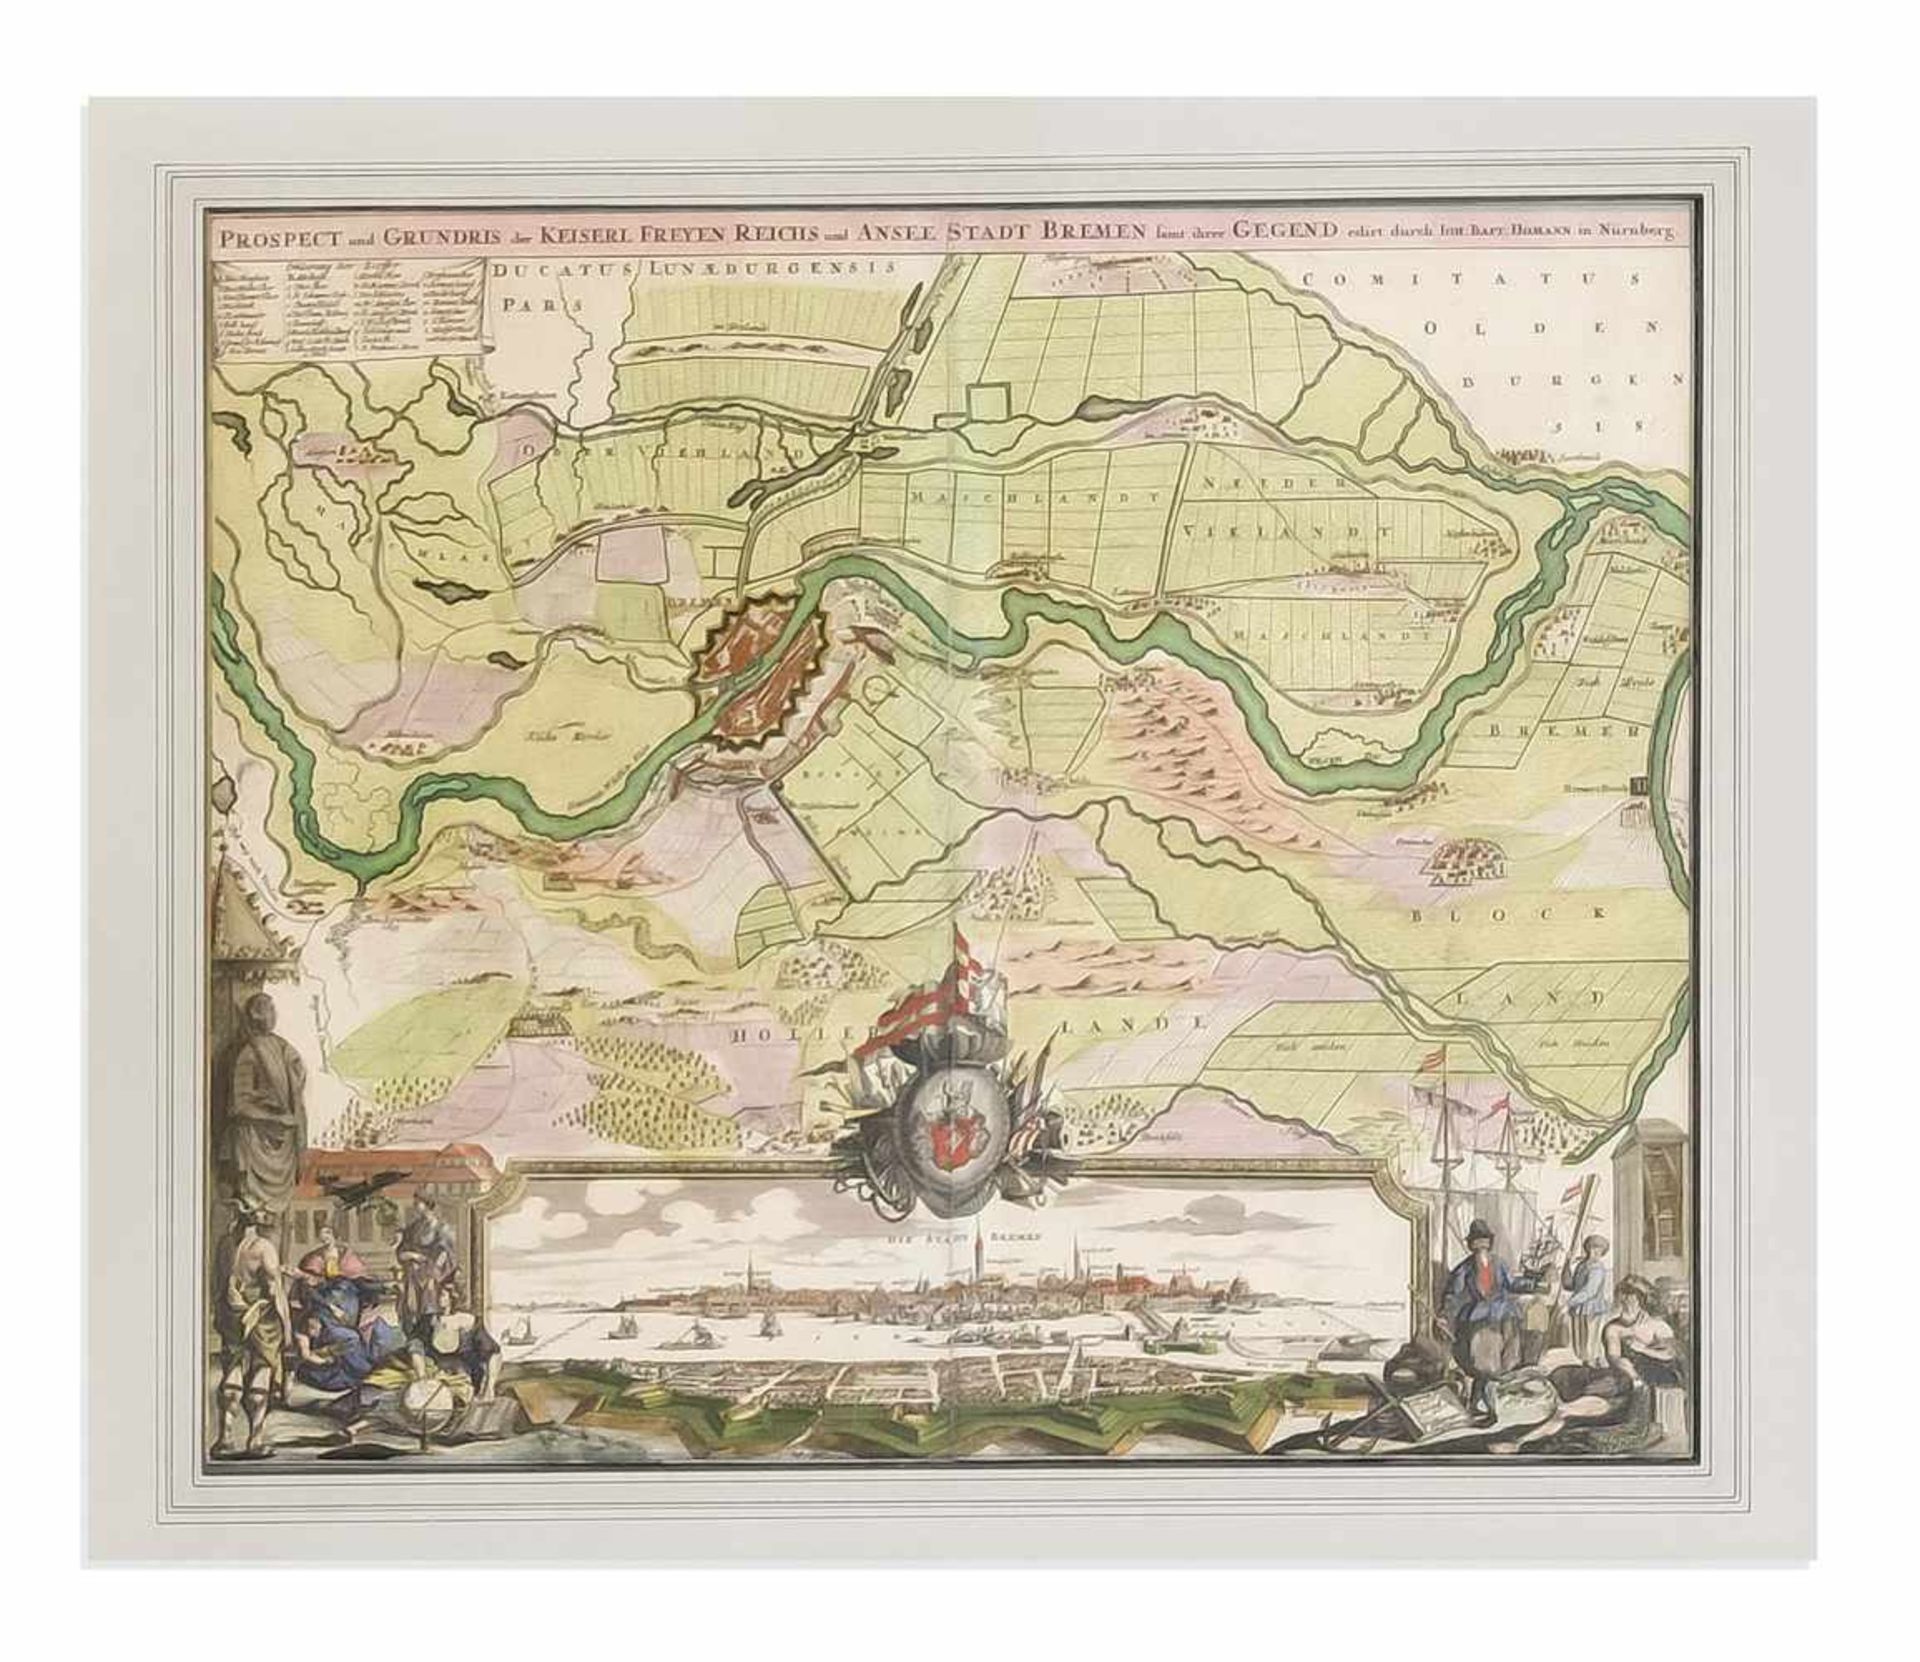 Zwei historische Karten Bremen und Elbverlauf. 1) "Prospect und Grundris der Keiserl.Freyen Reichs